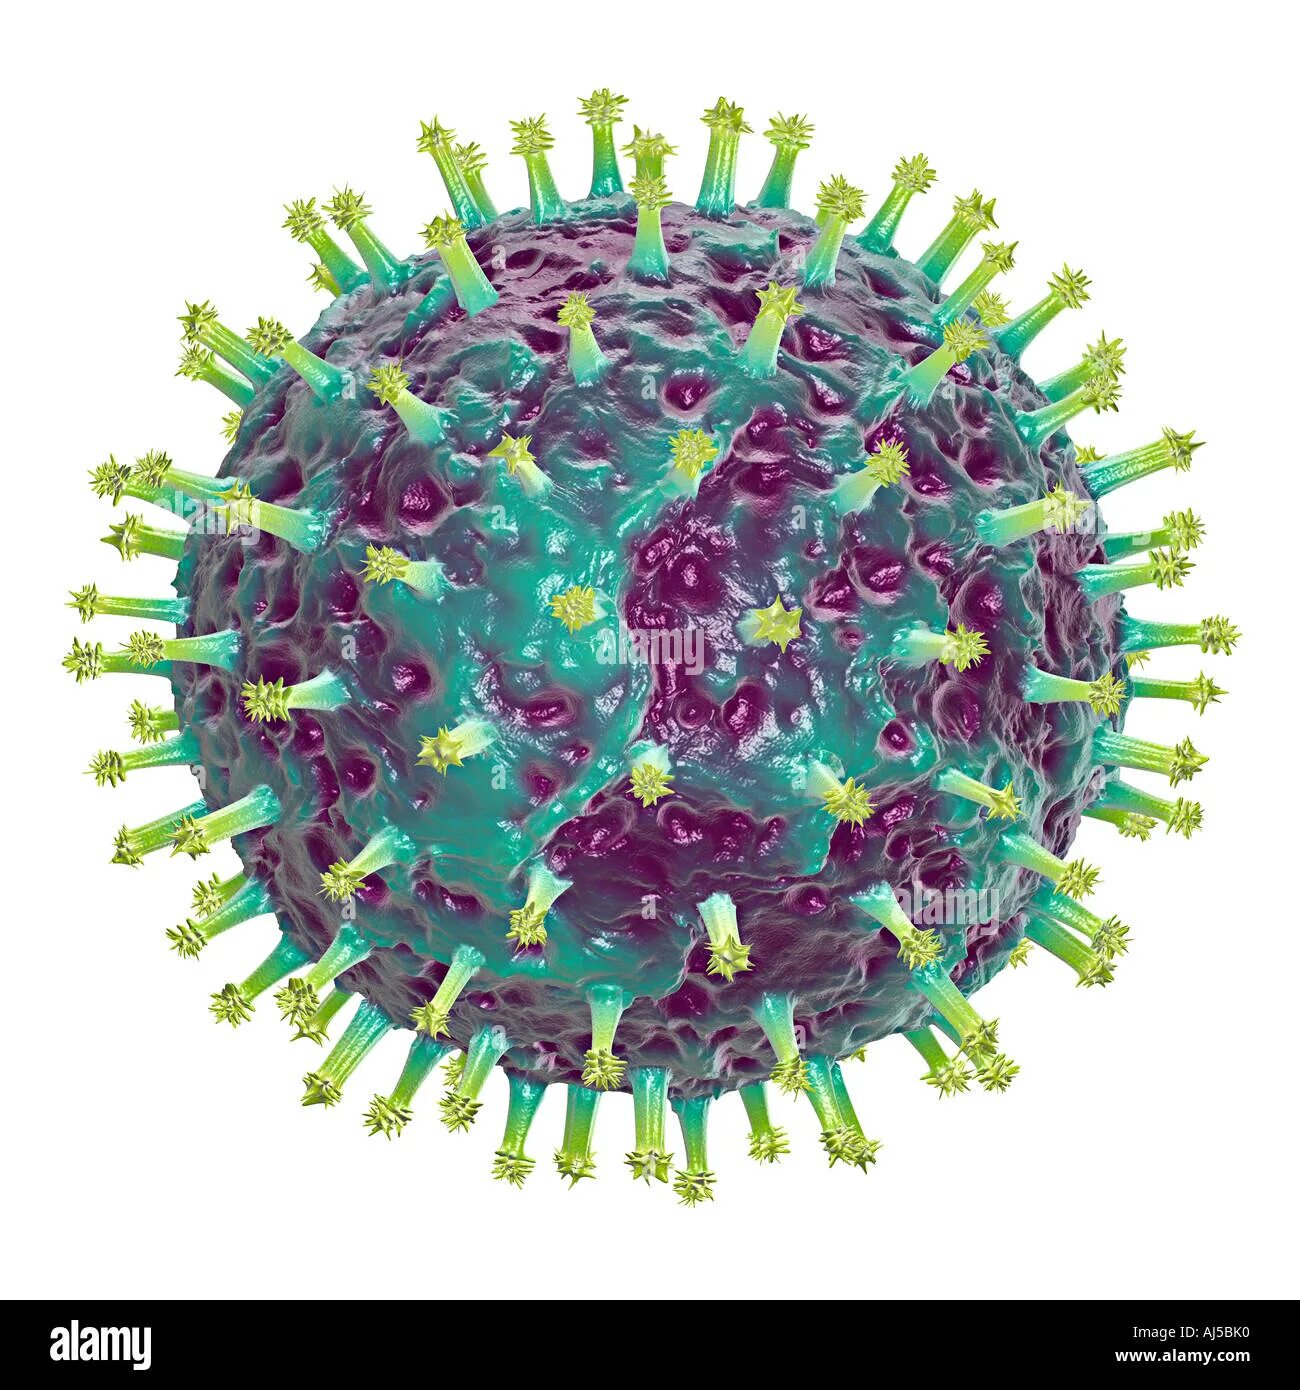 Сдать на грипп. Респираторно-синцитиальный вирус человека. Респираторно- синцитиальный вирус резистентность. Вирус гриппа. Изображение вируса гриппа.